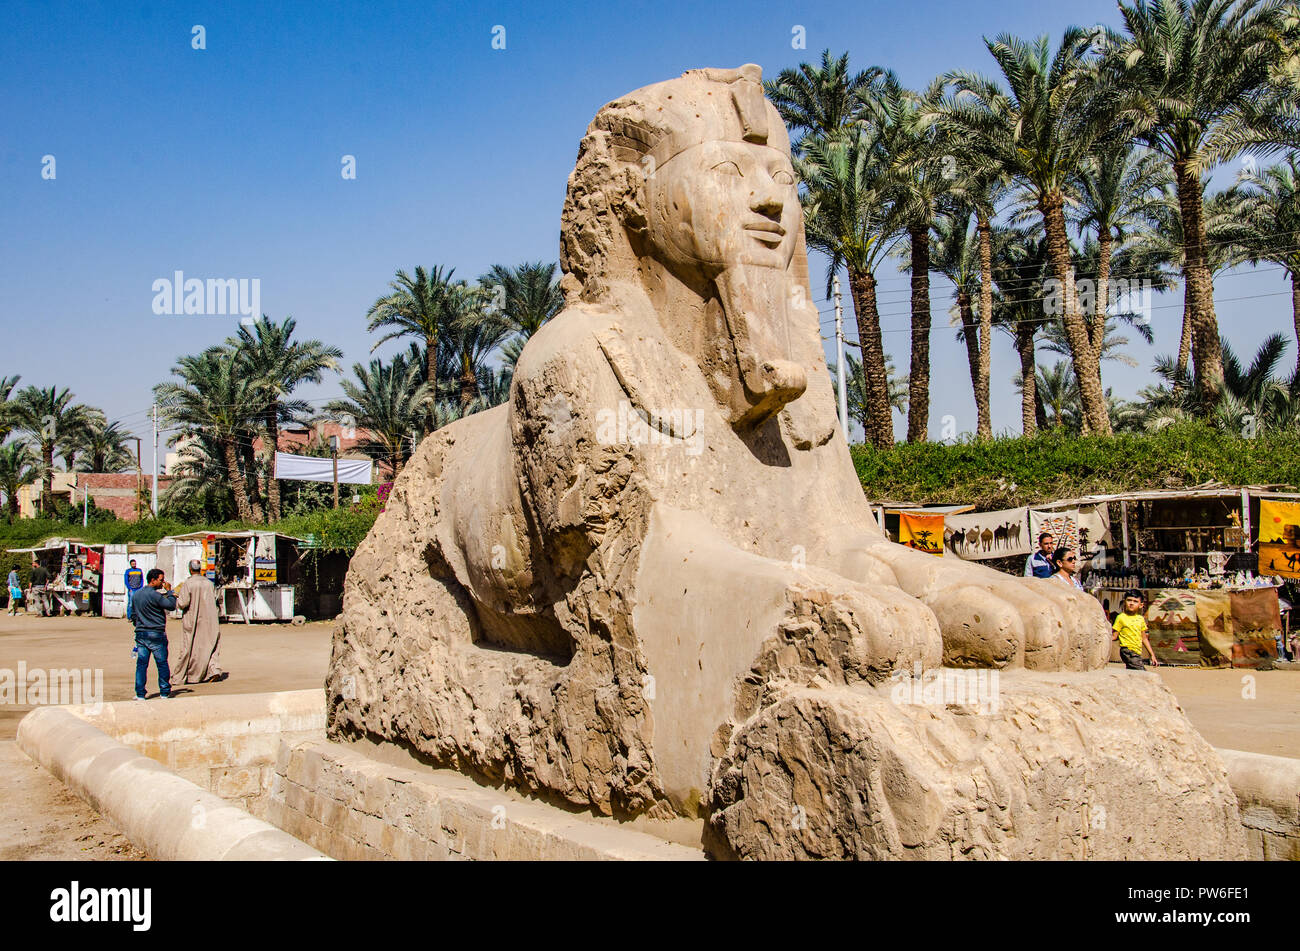 Memphis, au patrimoine mondial de l'Unesco Le Caire, Egypte - avril 2018. Sphinx antique statue. Banque D'Images